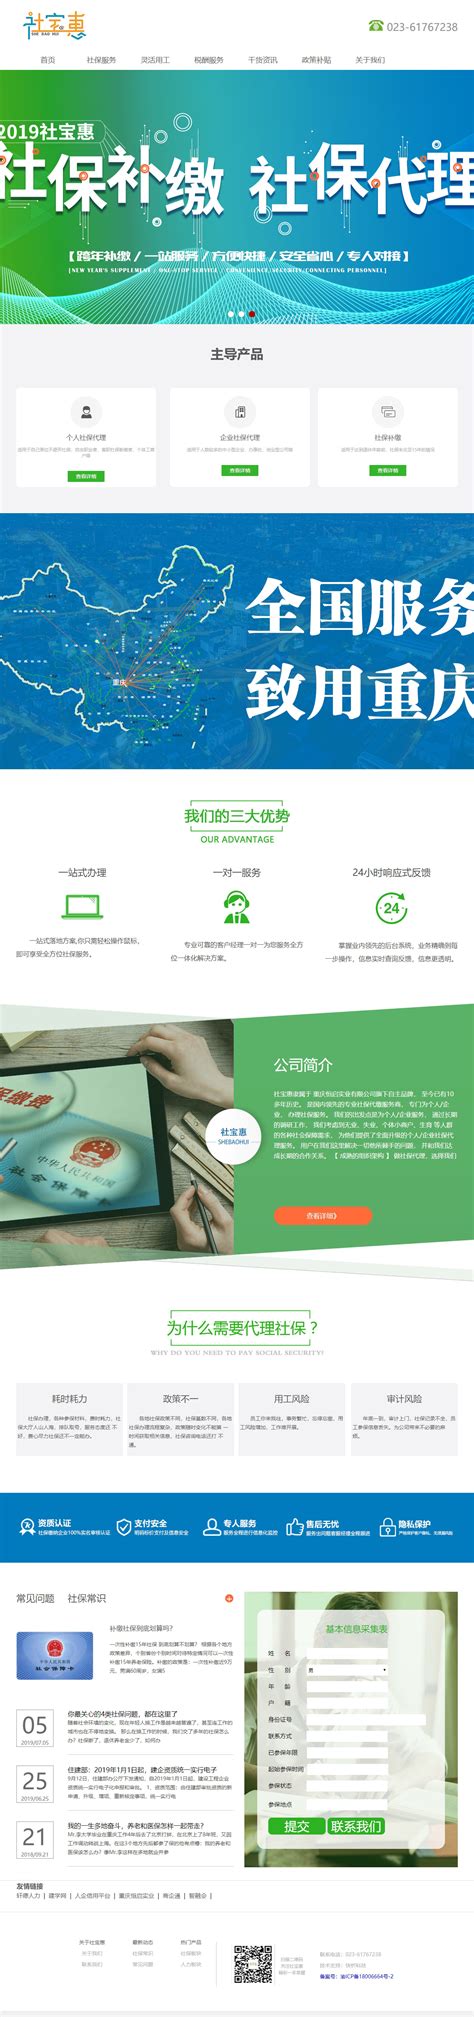 重庆营销型网站制作大概要多少钱